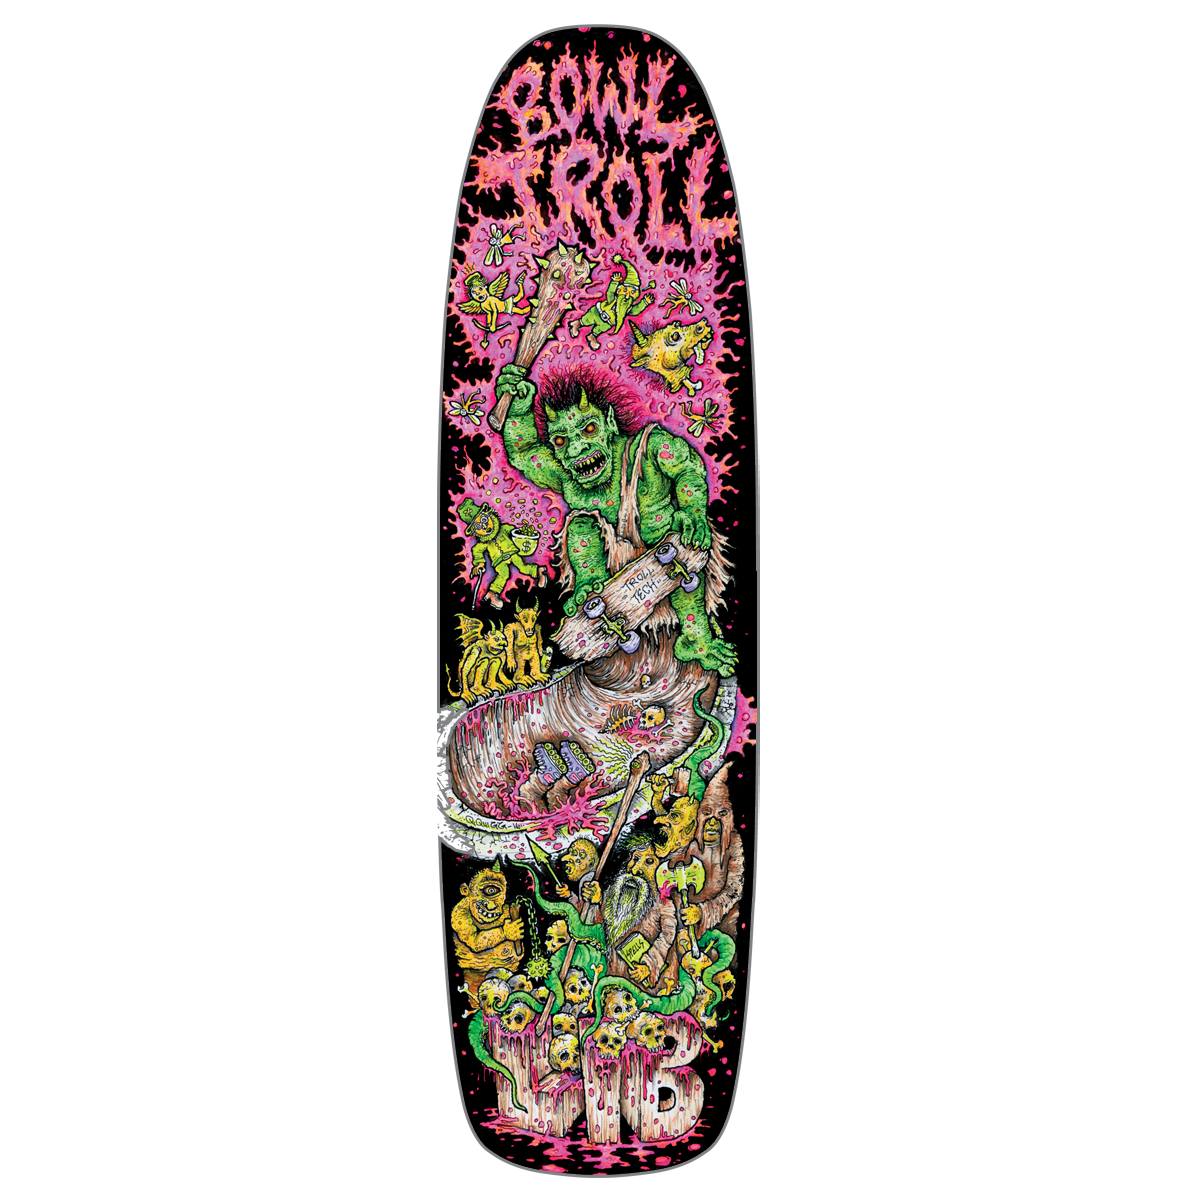 Skateboard PNG Image Background